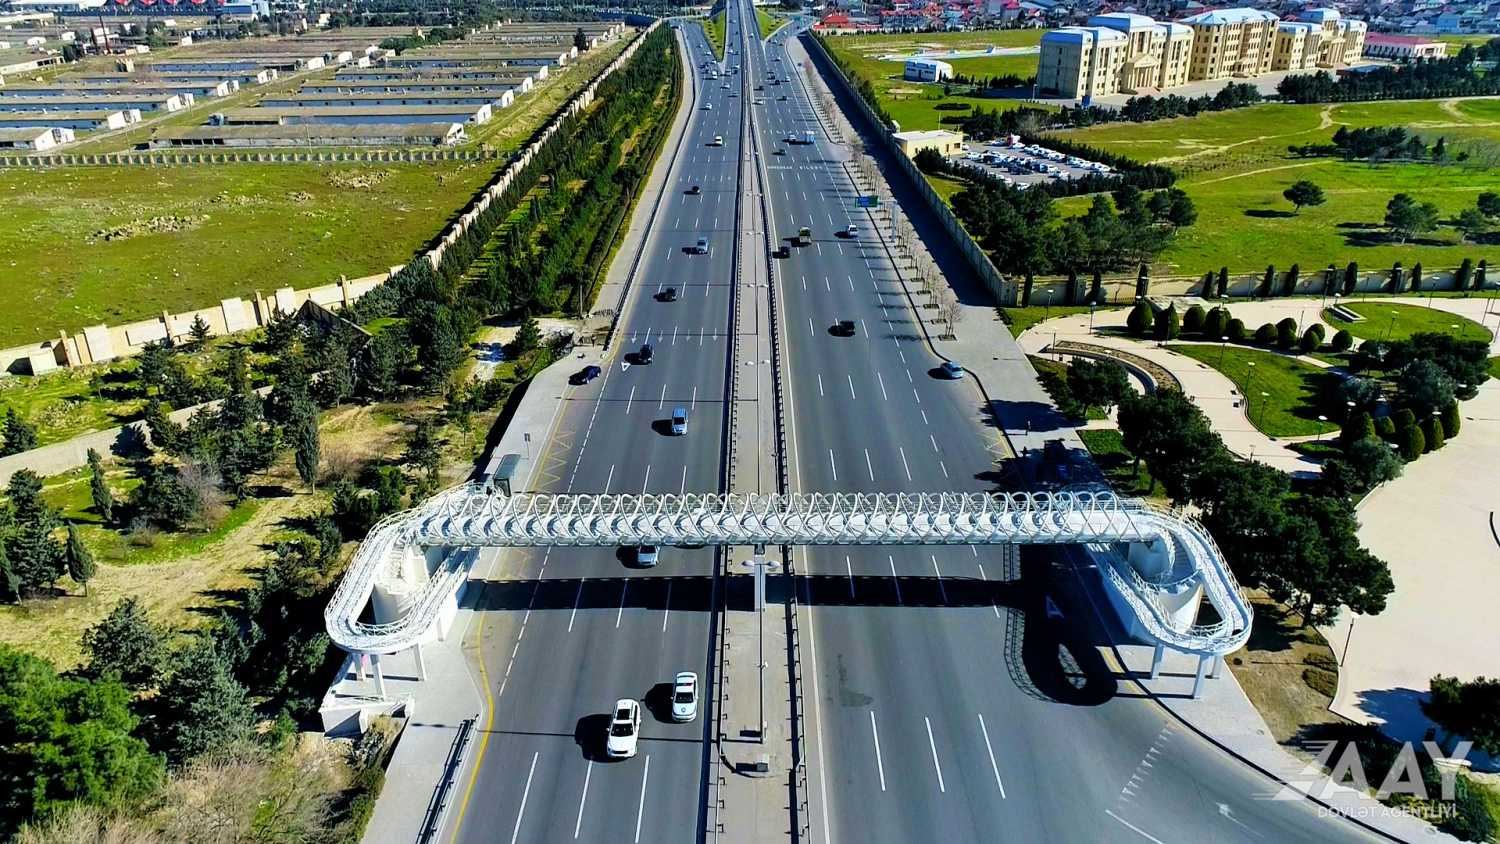 В Баку завершено строительство еще одного надземного пешеходного перехода (ФОТО/ВИДЕО)